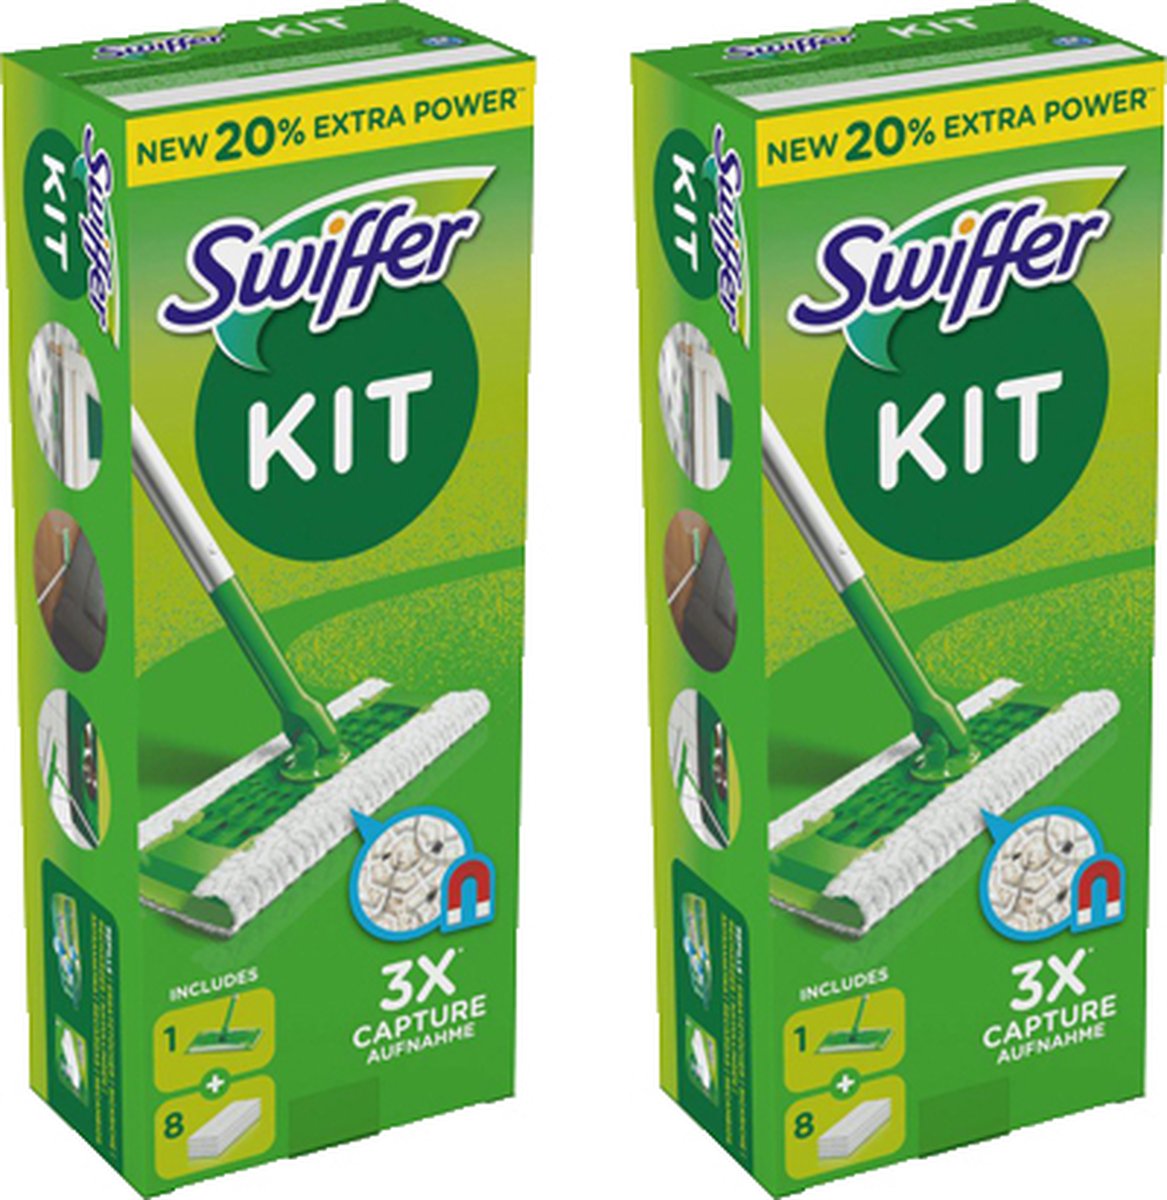 Swiffer Sweeper Dry + Wet Kit de démarrage pour serpillière et